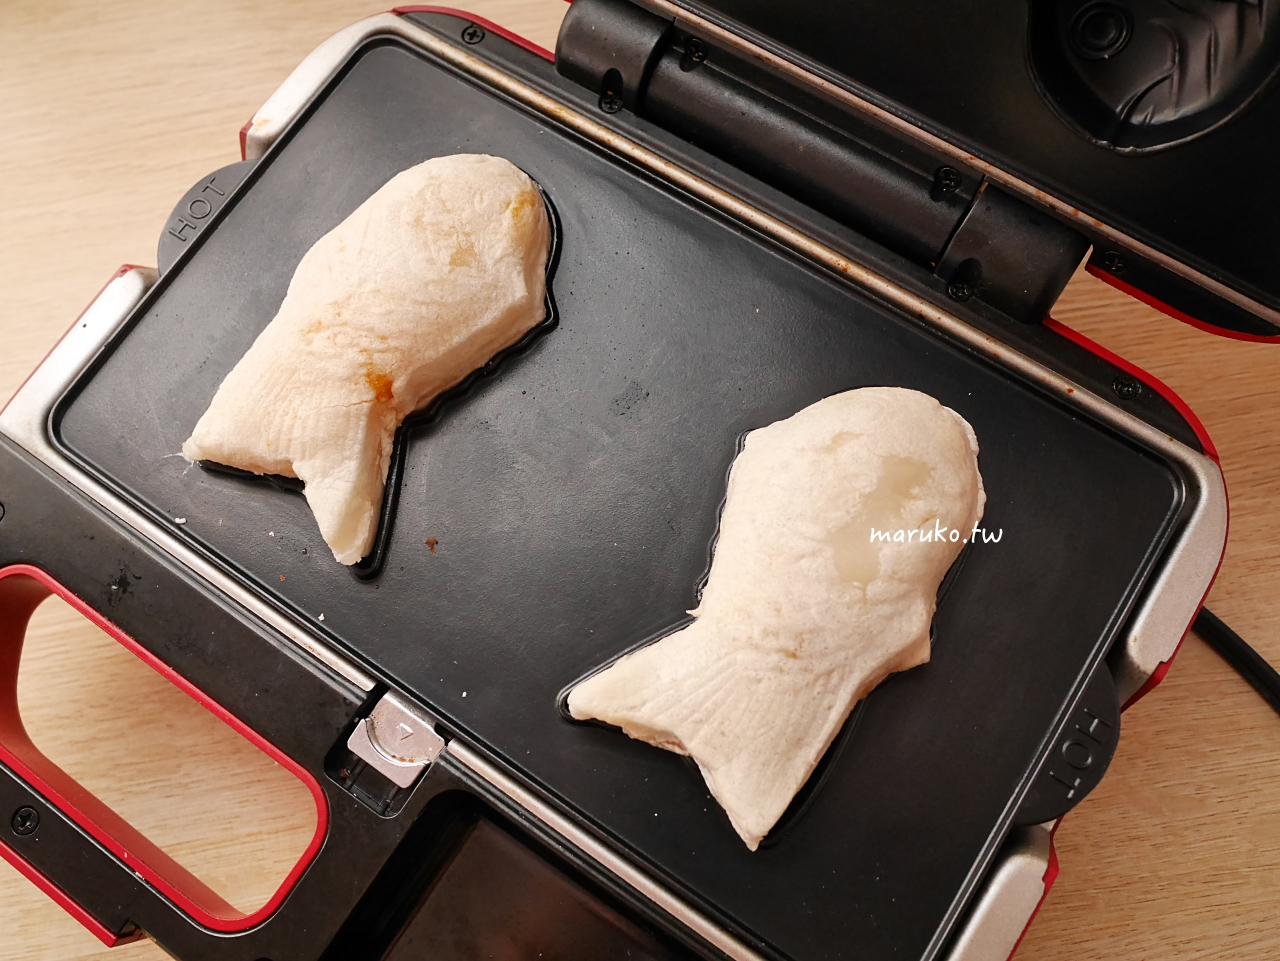 【食譜】白皮鯛魚燒 麻糬感鯛魚燒 冰心地瓜運用做法 @Maruko與美食有個約會